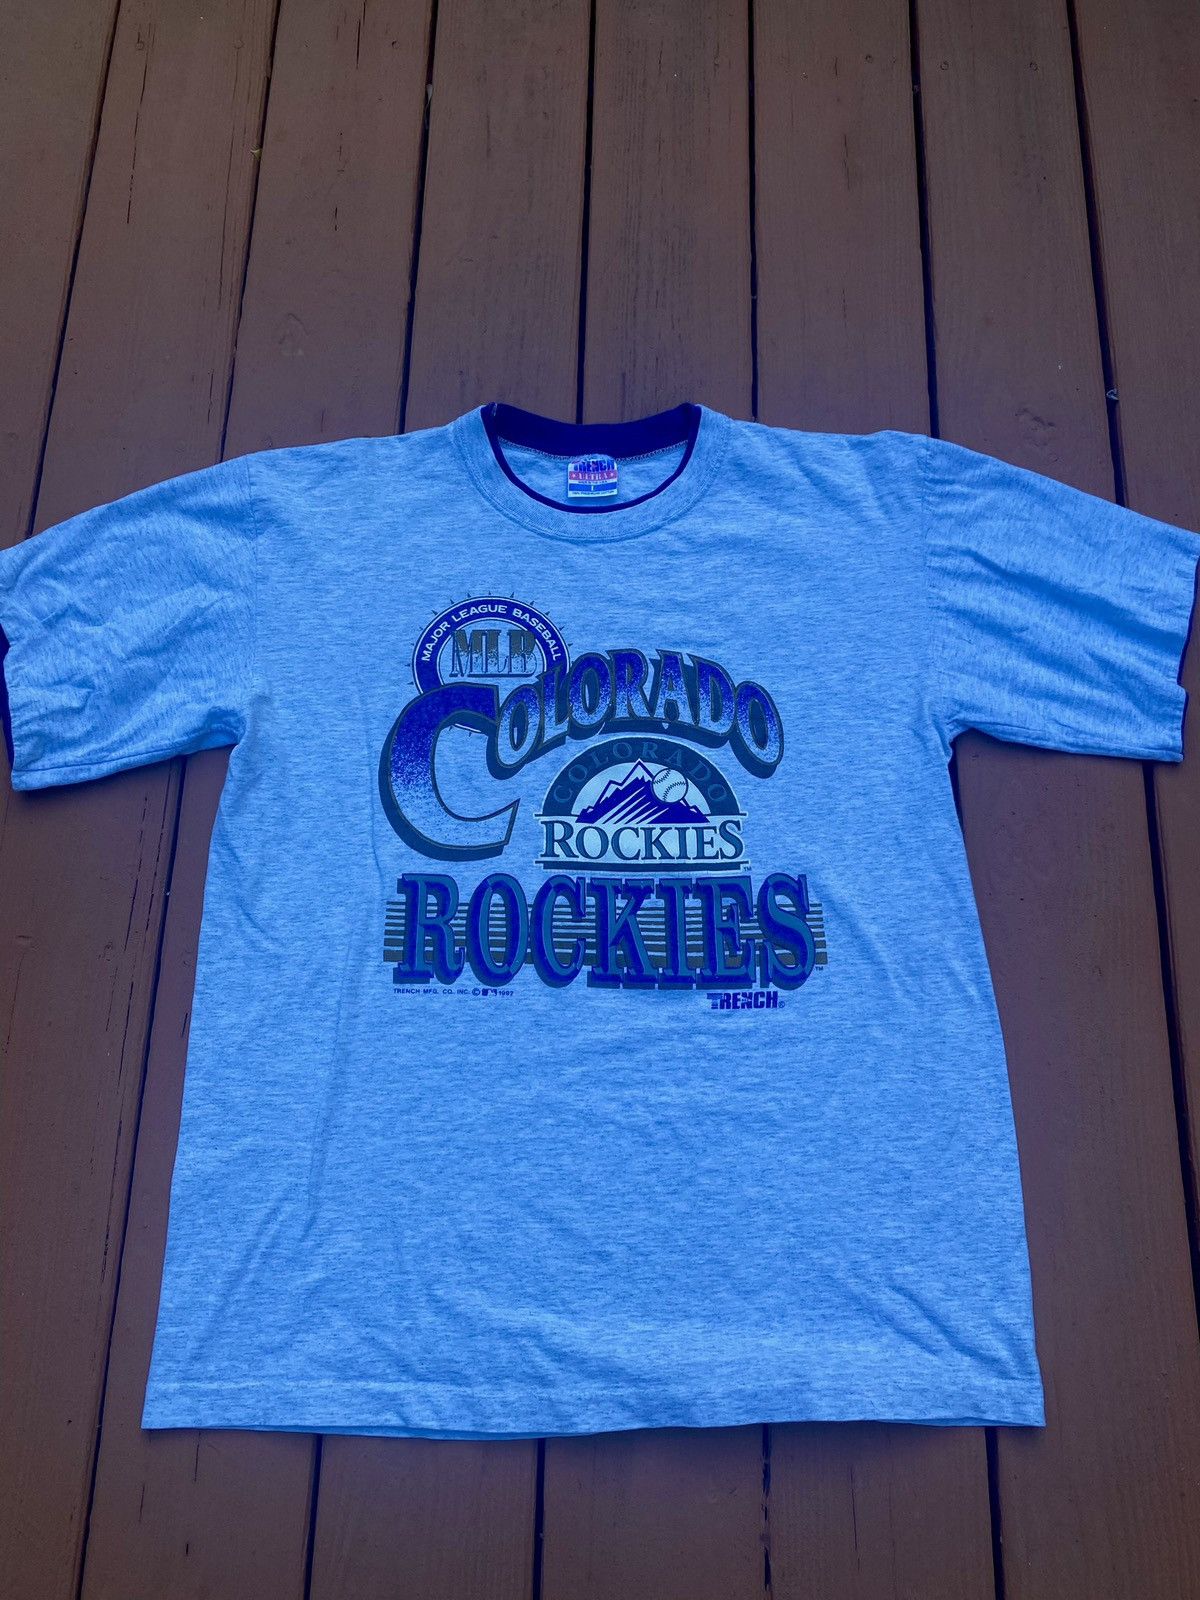 Trench Ultra, Shirts, Colorado Rockies T Shirt Vintage 9s Mlb Baseball